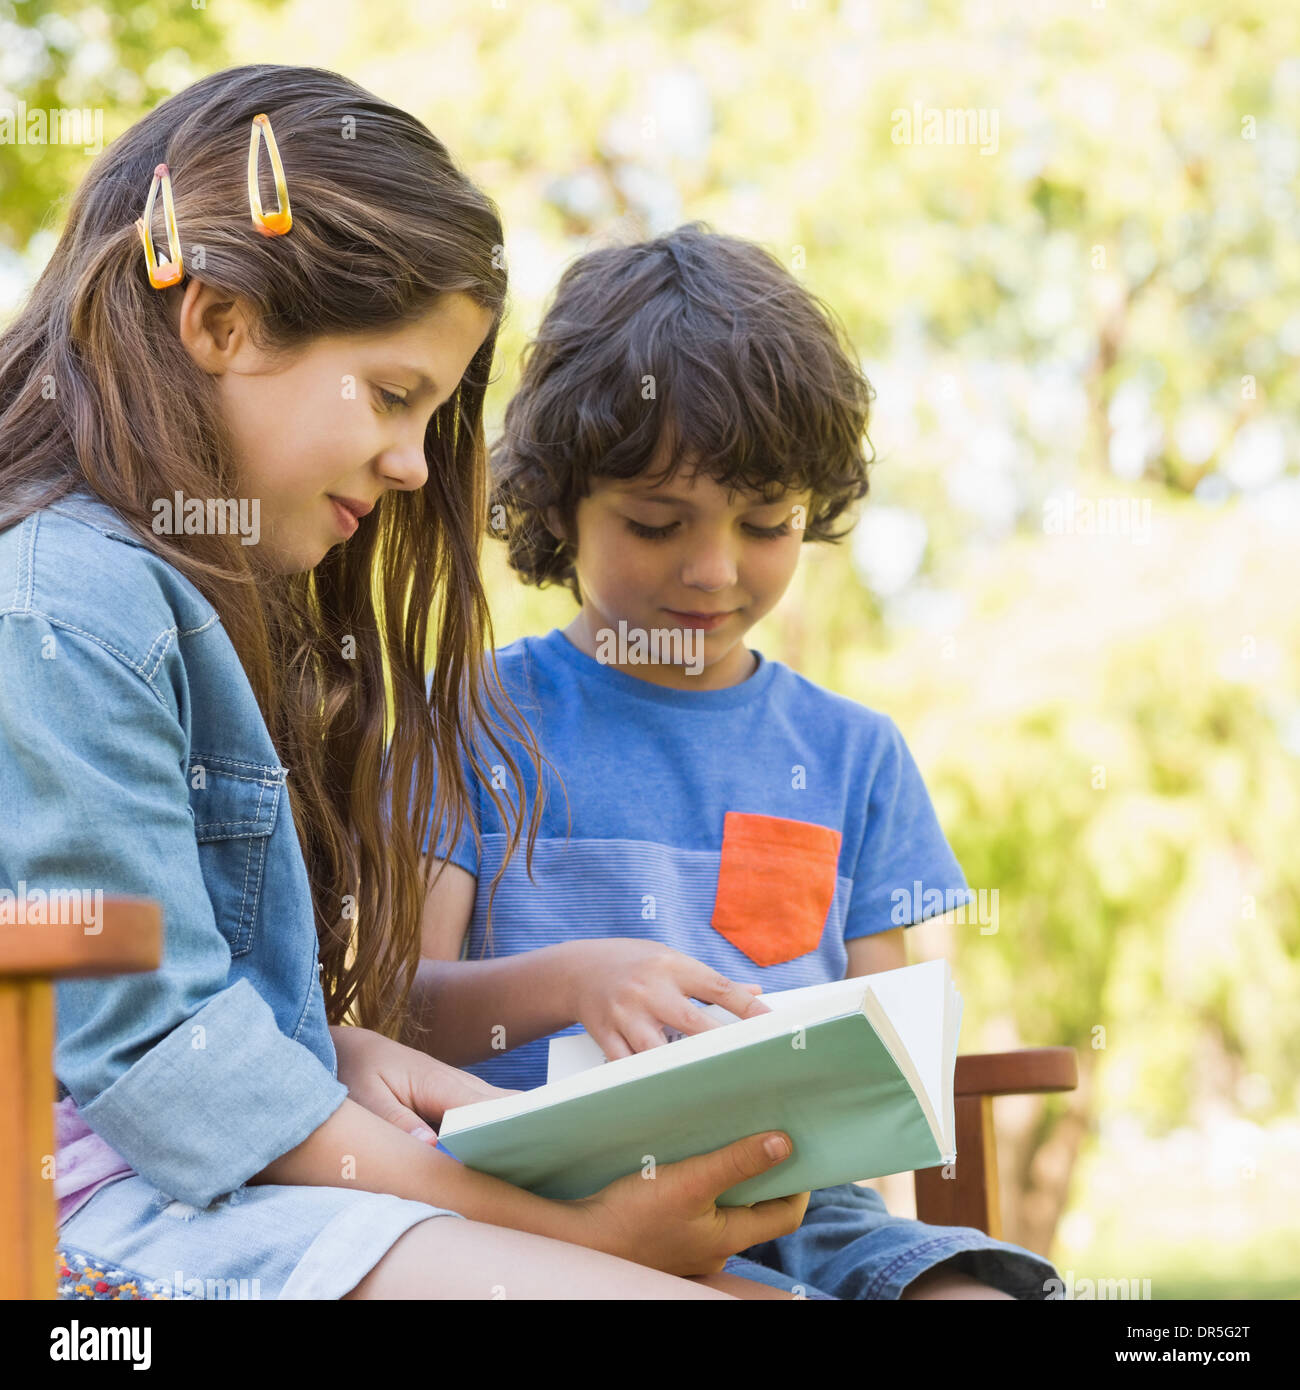 Vue latérale du kids reading book on park bench Banque D'Images